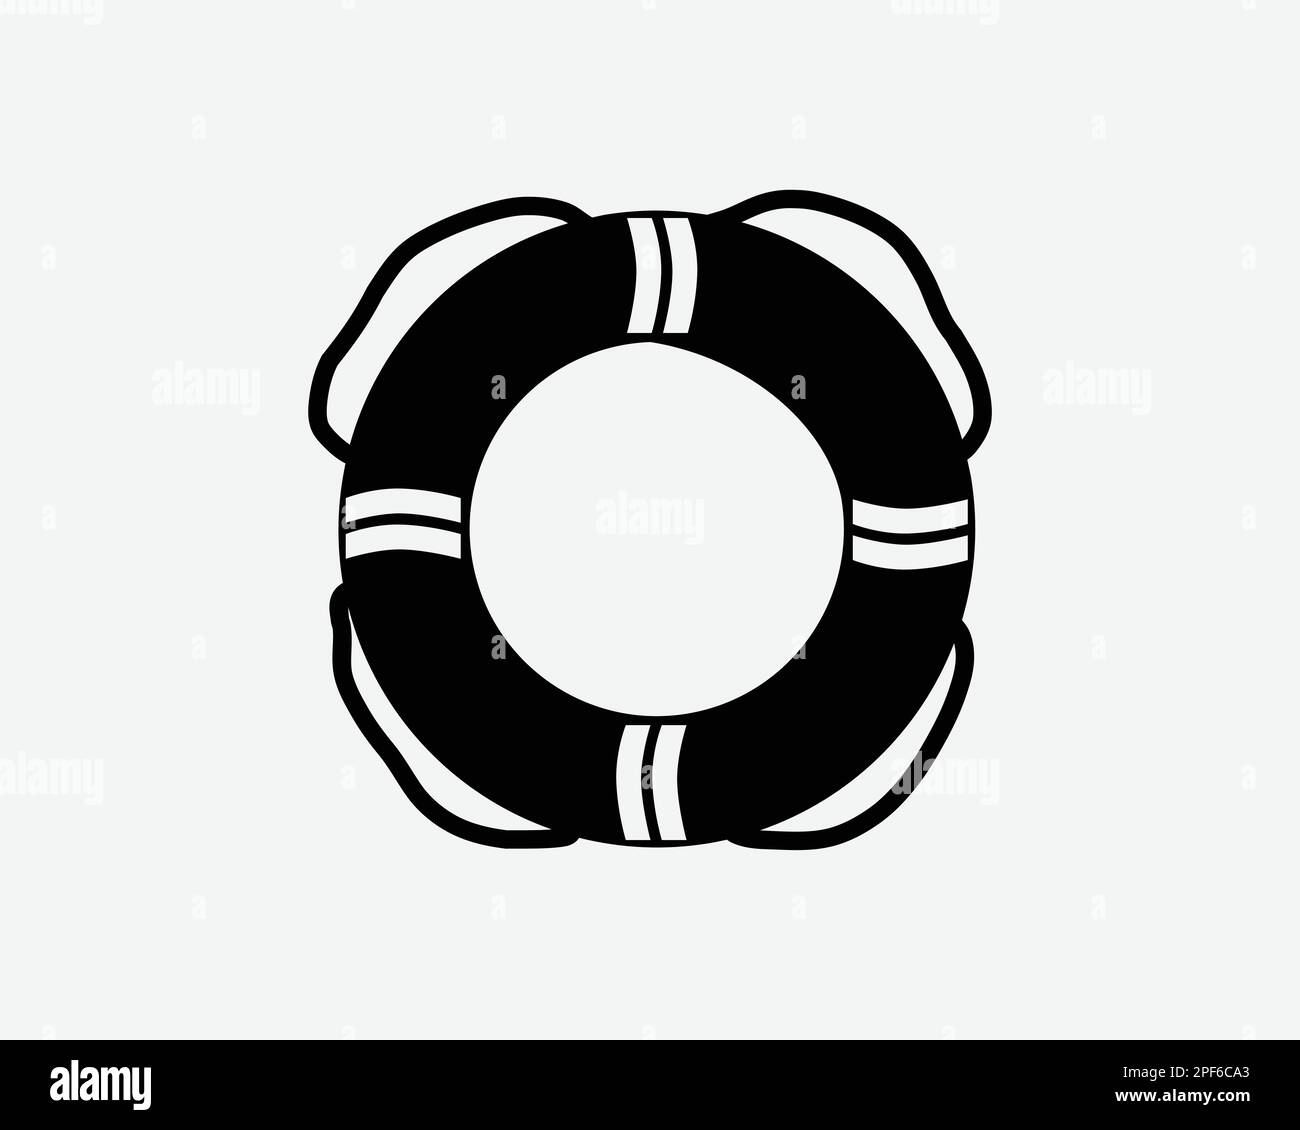 Lifebuoy Ring Life Buoy Floatation Emergency Rescue Black White Silhouette Sign Symbol icona Clipart Graphic Artwork Pittogramma Illustrazione VECTO Illustrazione Vettoriale